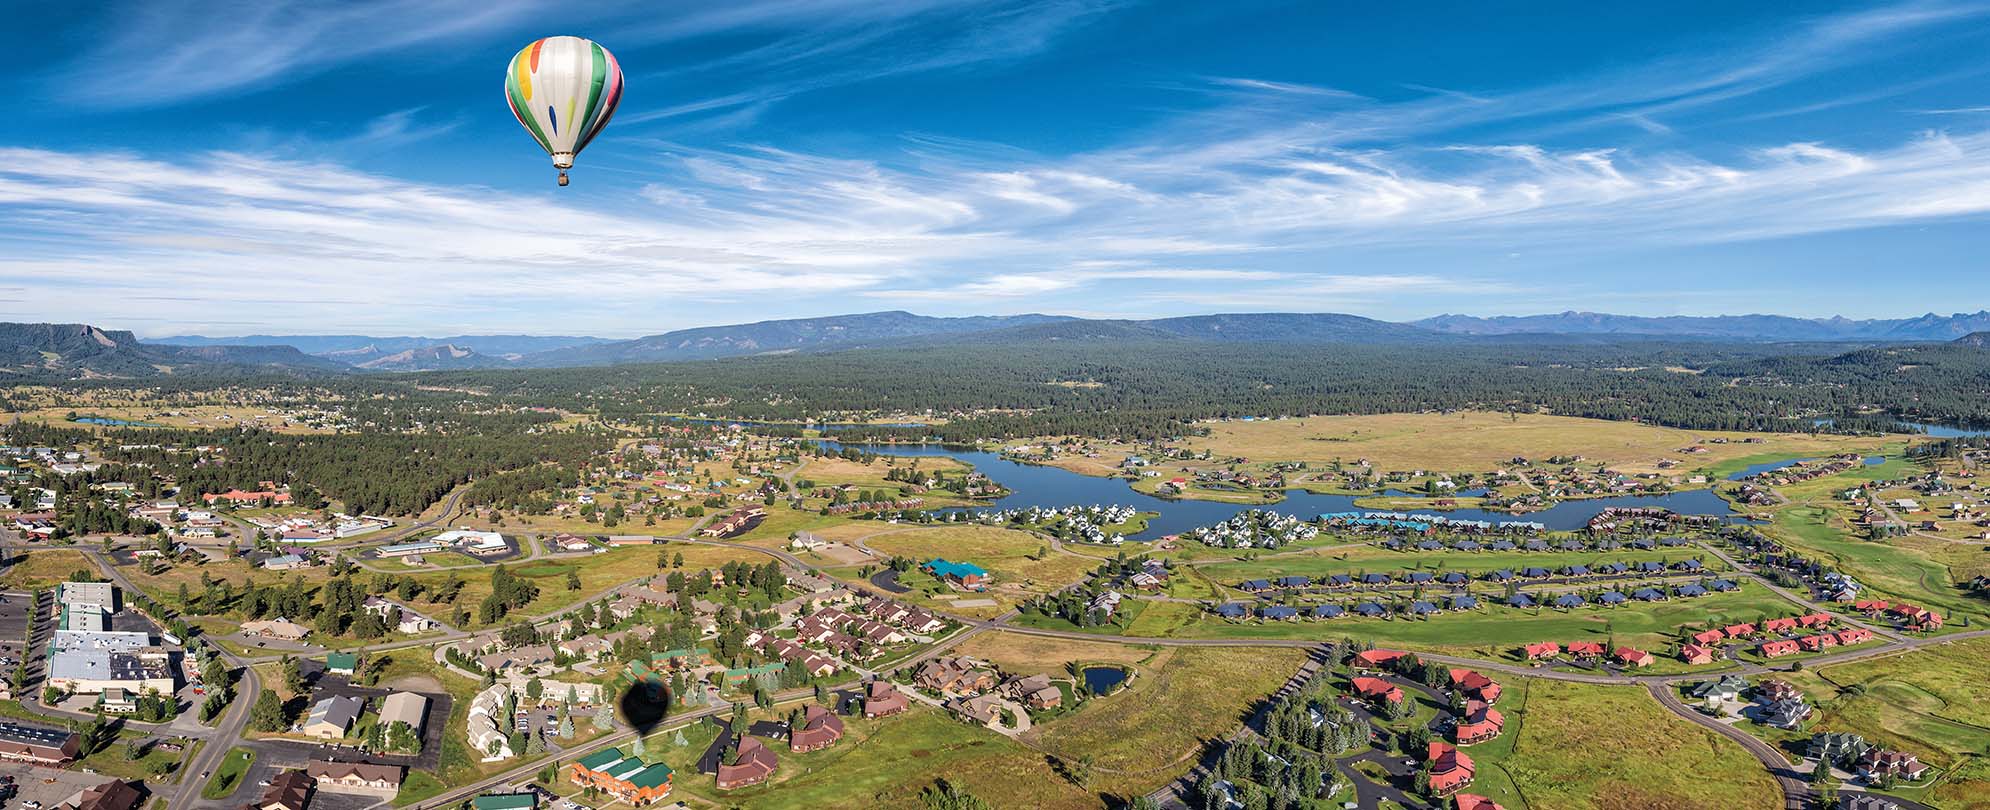 A hot air balloon flies over Pagosa Springs, Colorado.